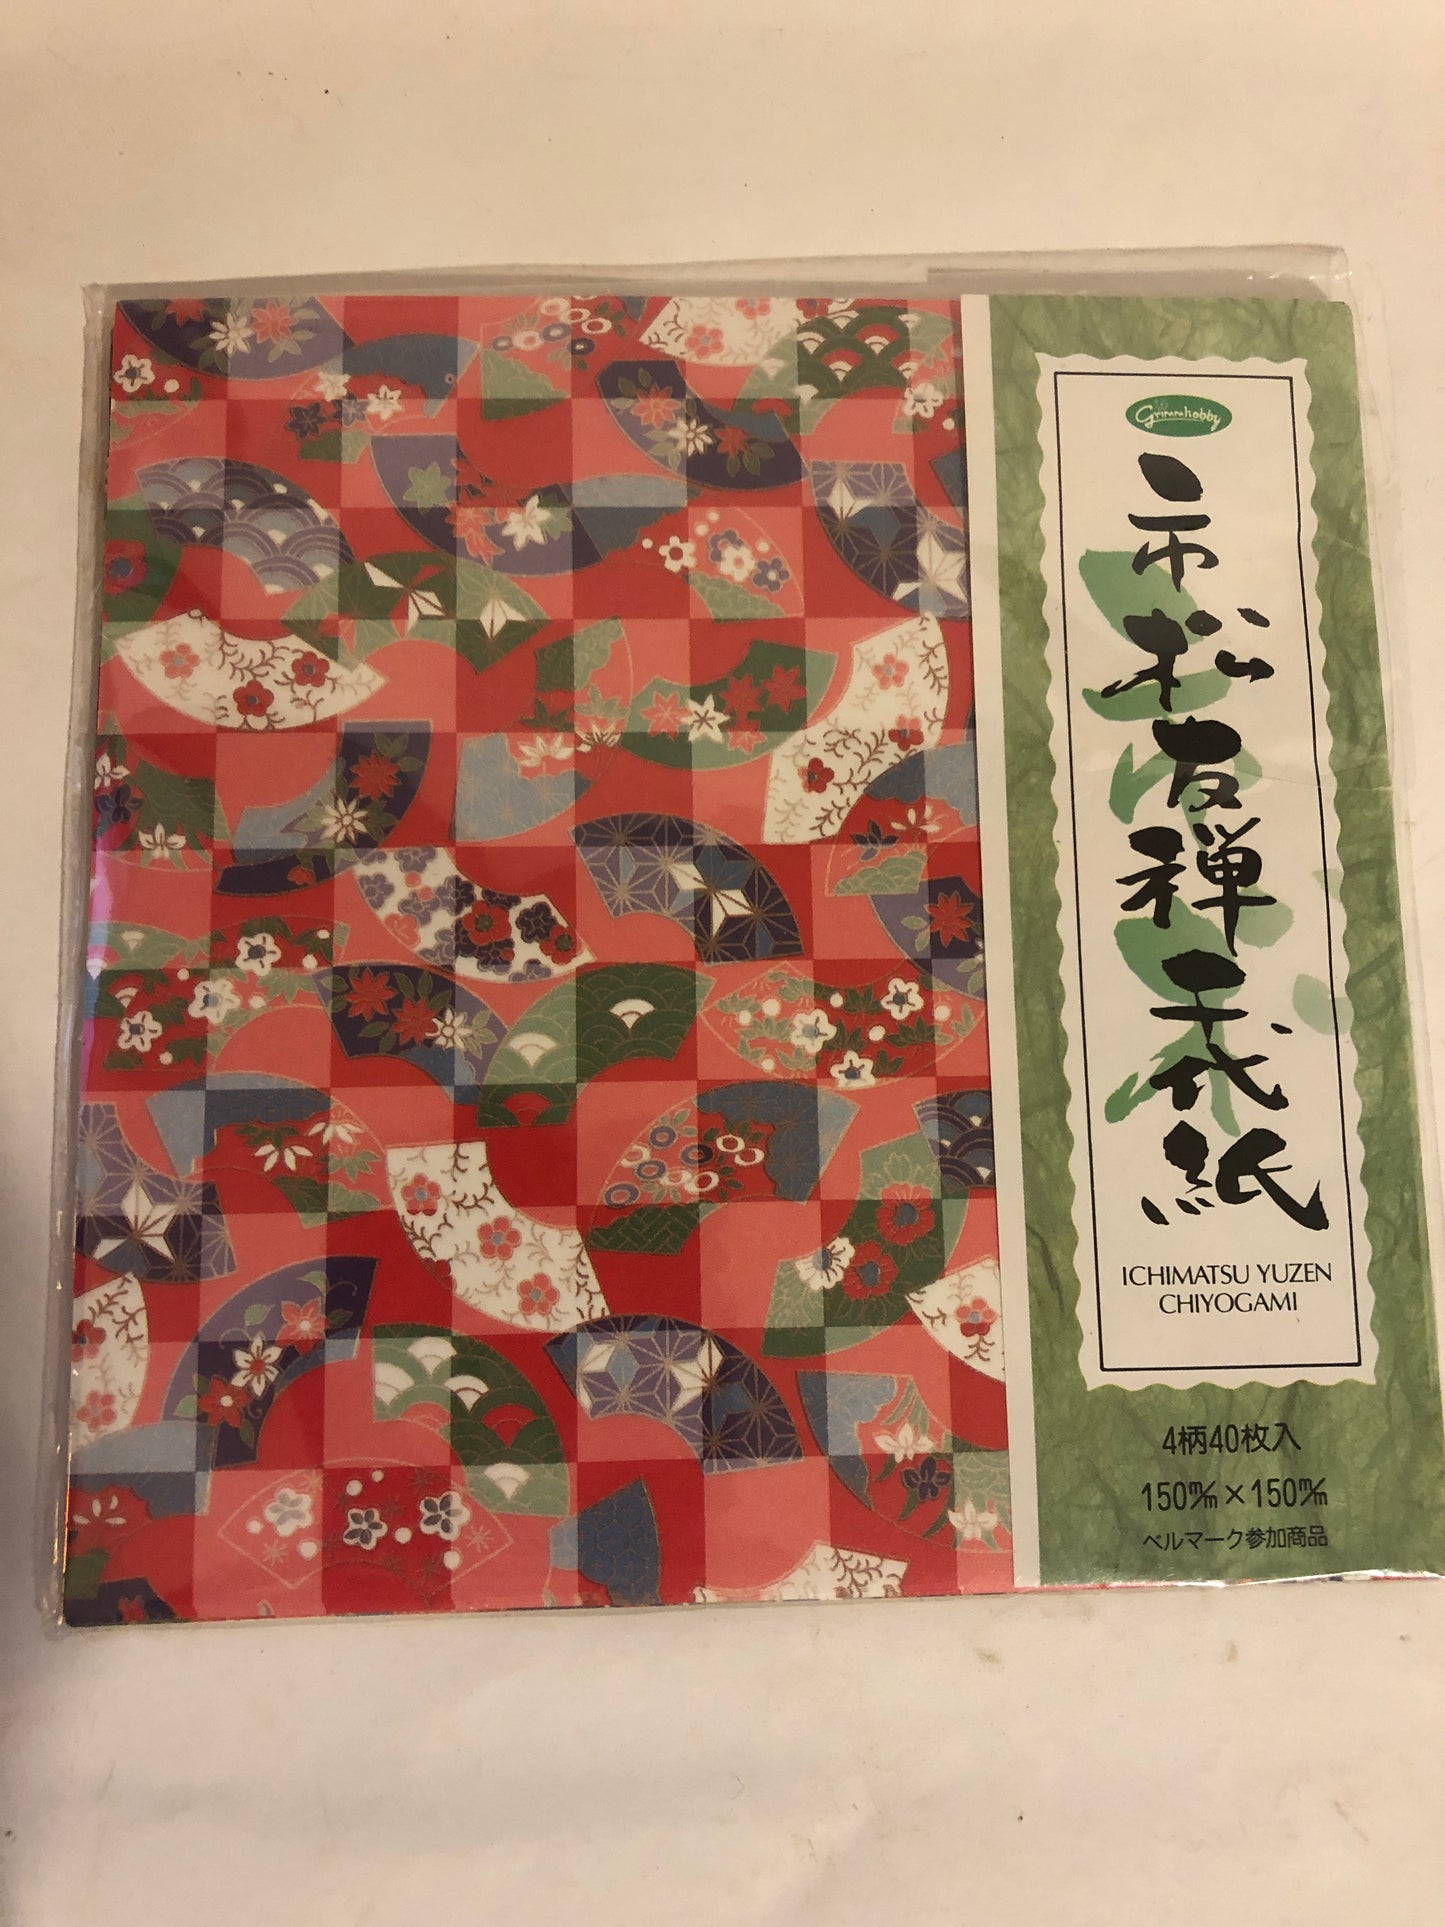 New ICHIMATSU YUZEN CHIYOGAMI 6"x6" - 10 Pack Japanese Scrapbook Paper